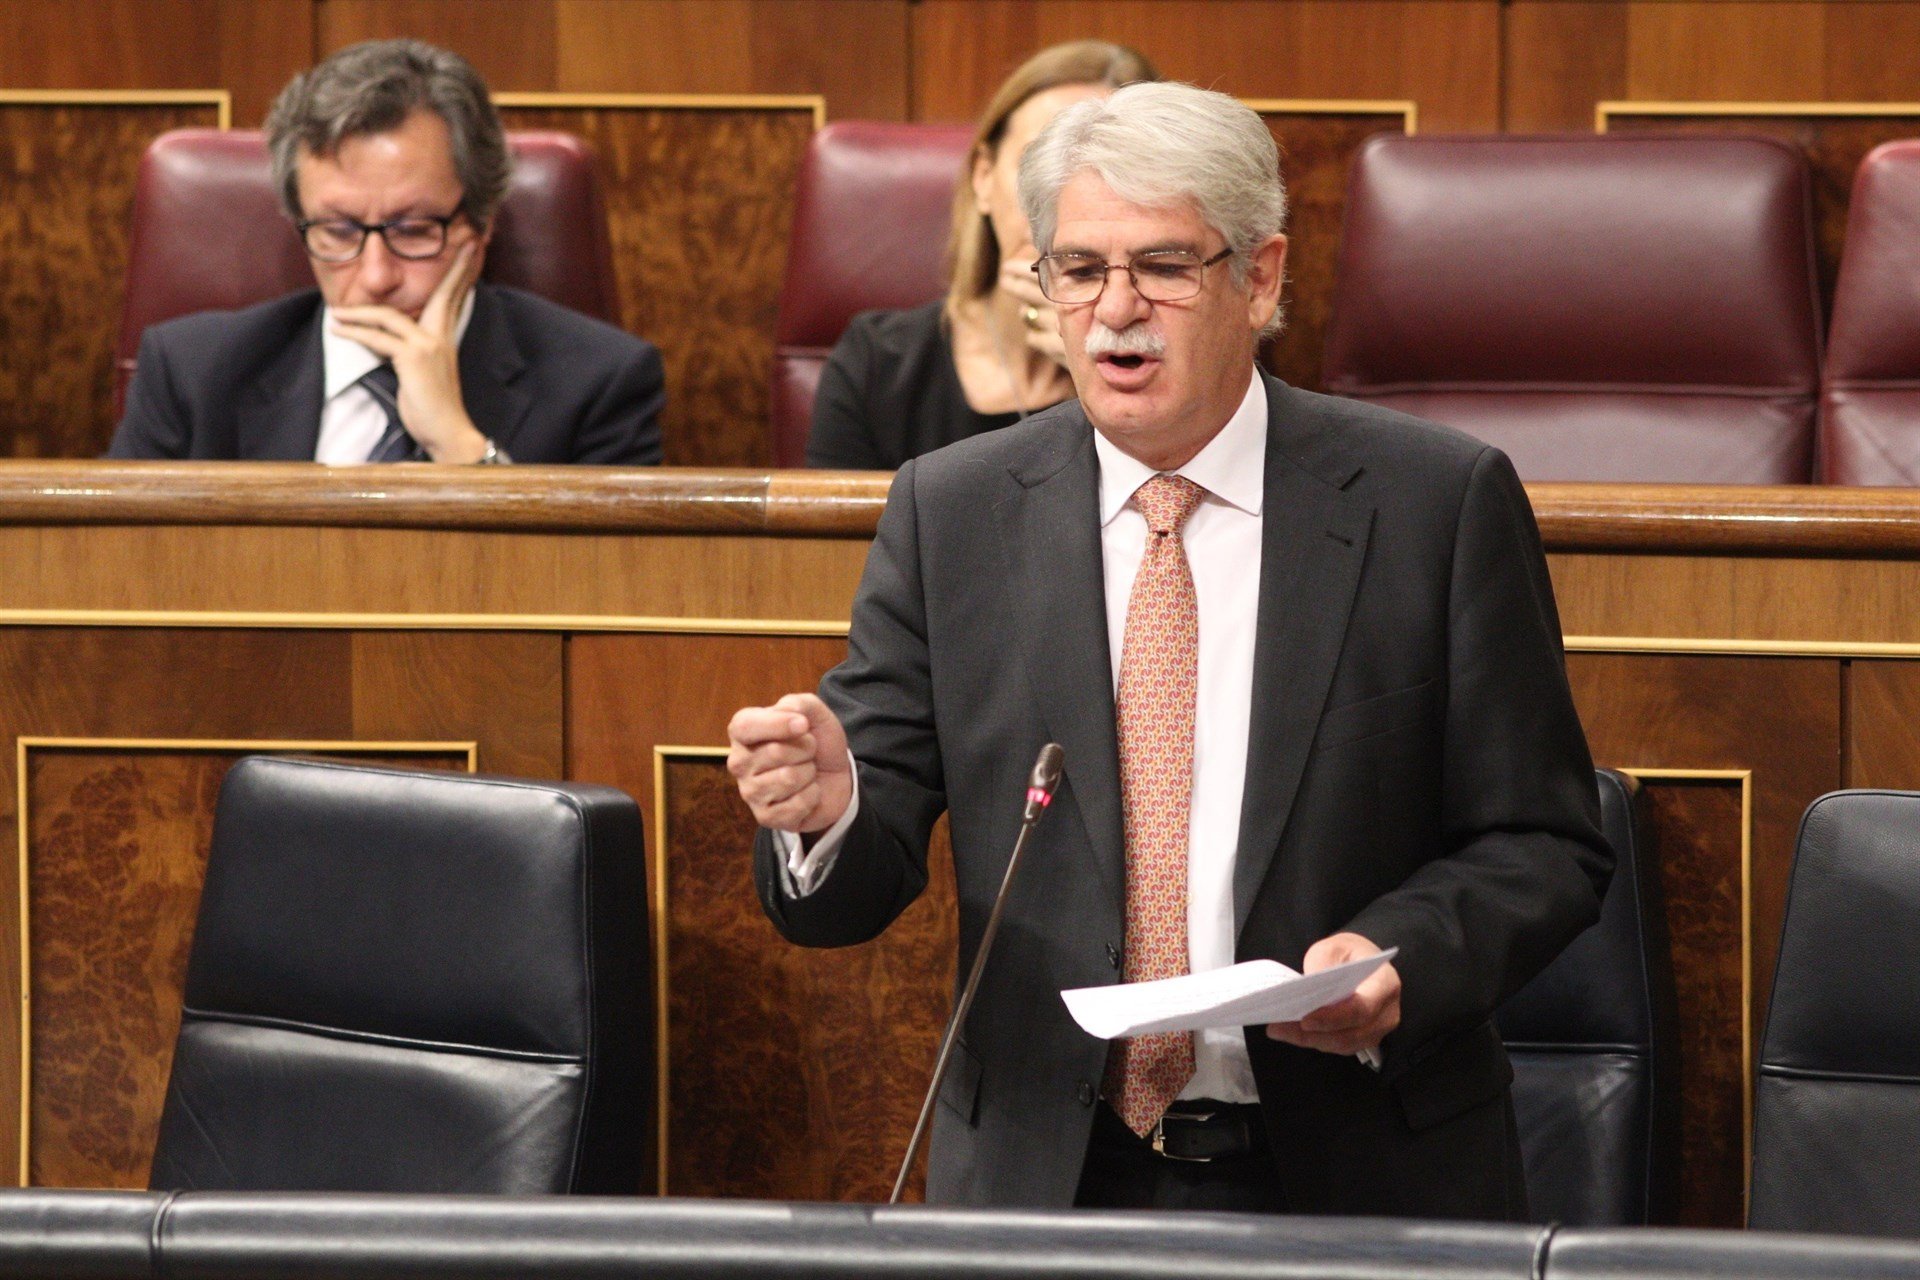 Dastis reconeix que el govern espanyol està "perplex"